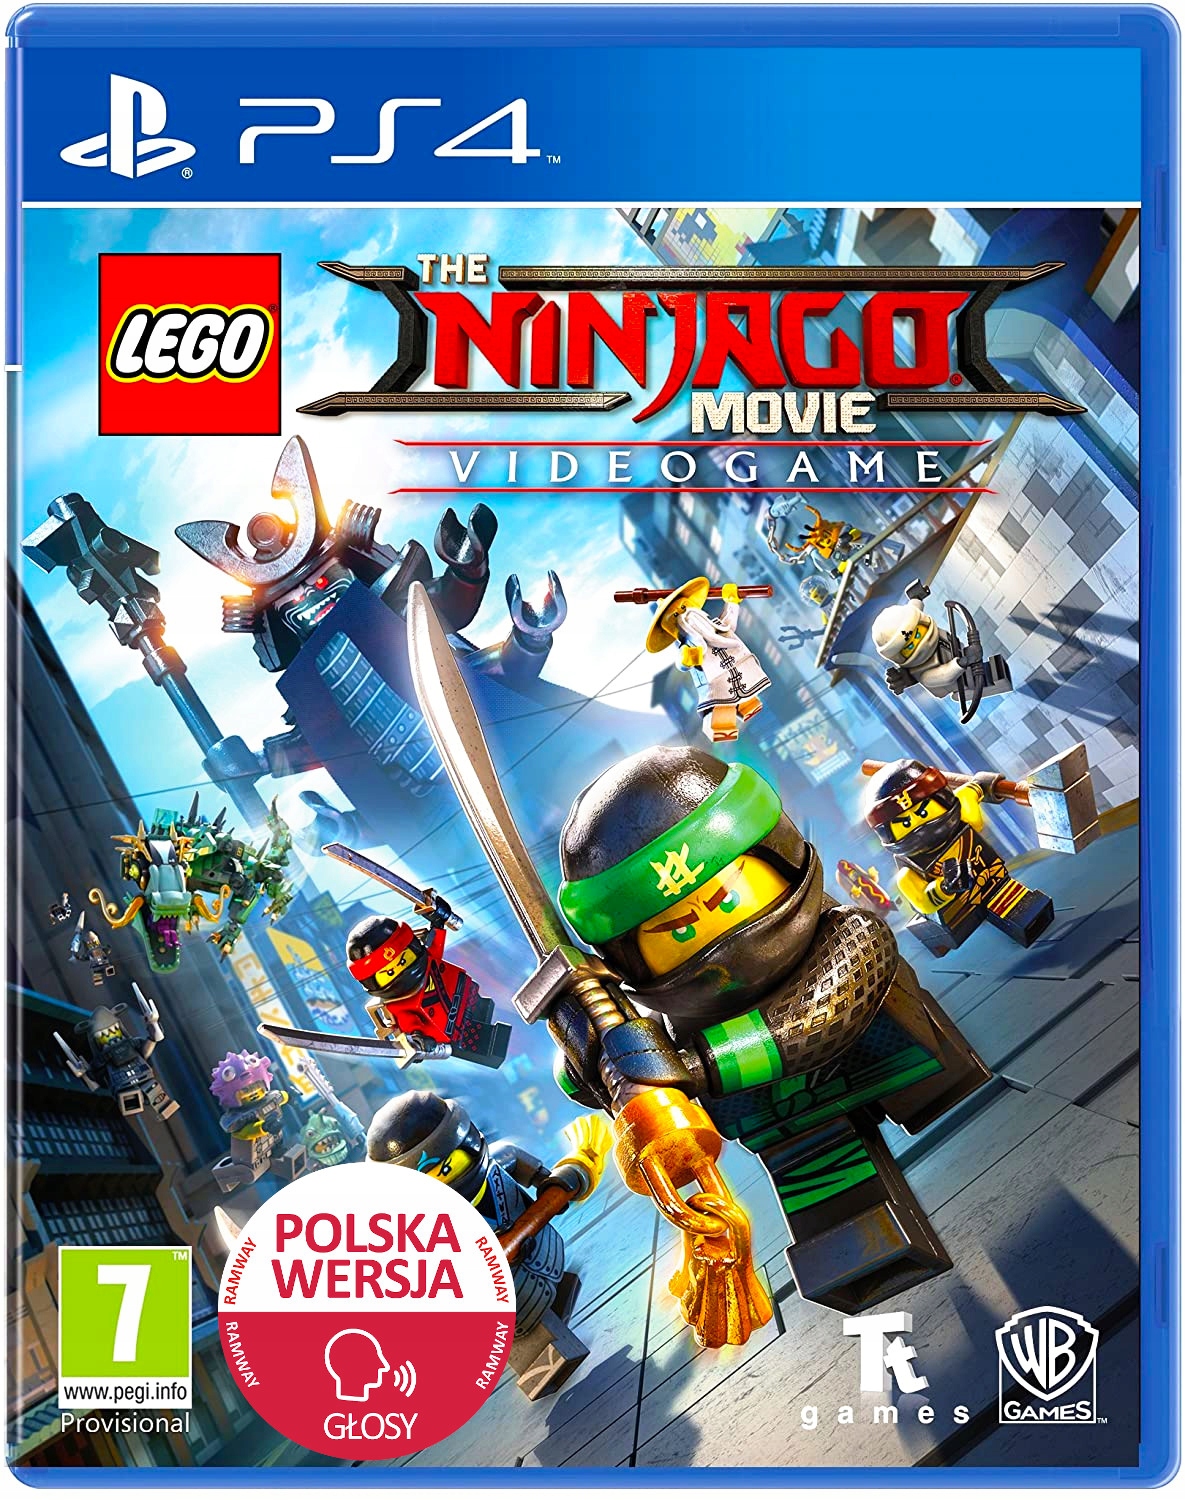 LEGO Ninjago PL PS4 Dubbing Gra Wideo The MOVIE Stan: nowy zł - Sklepy, Opinie, Ceny w Allegro.pl